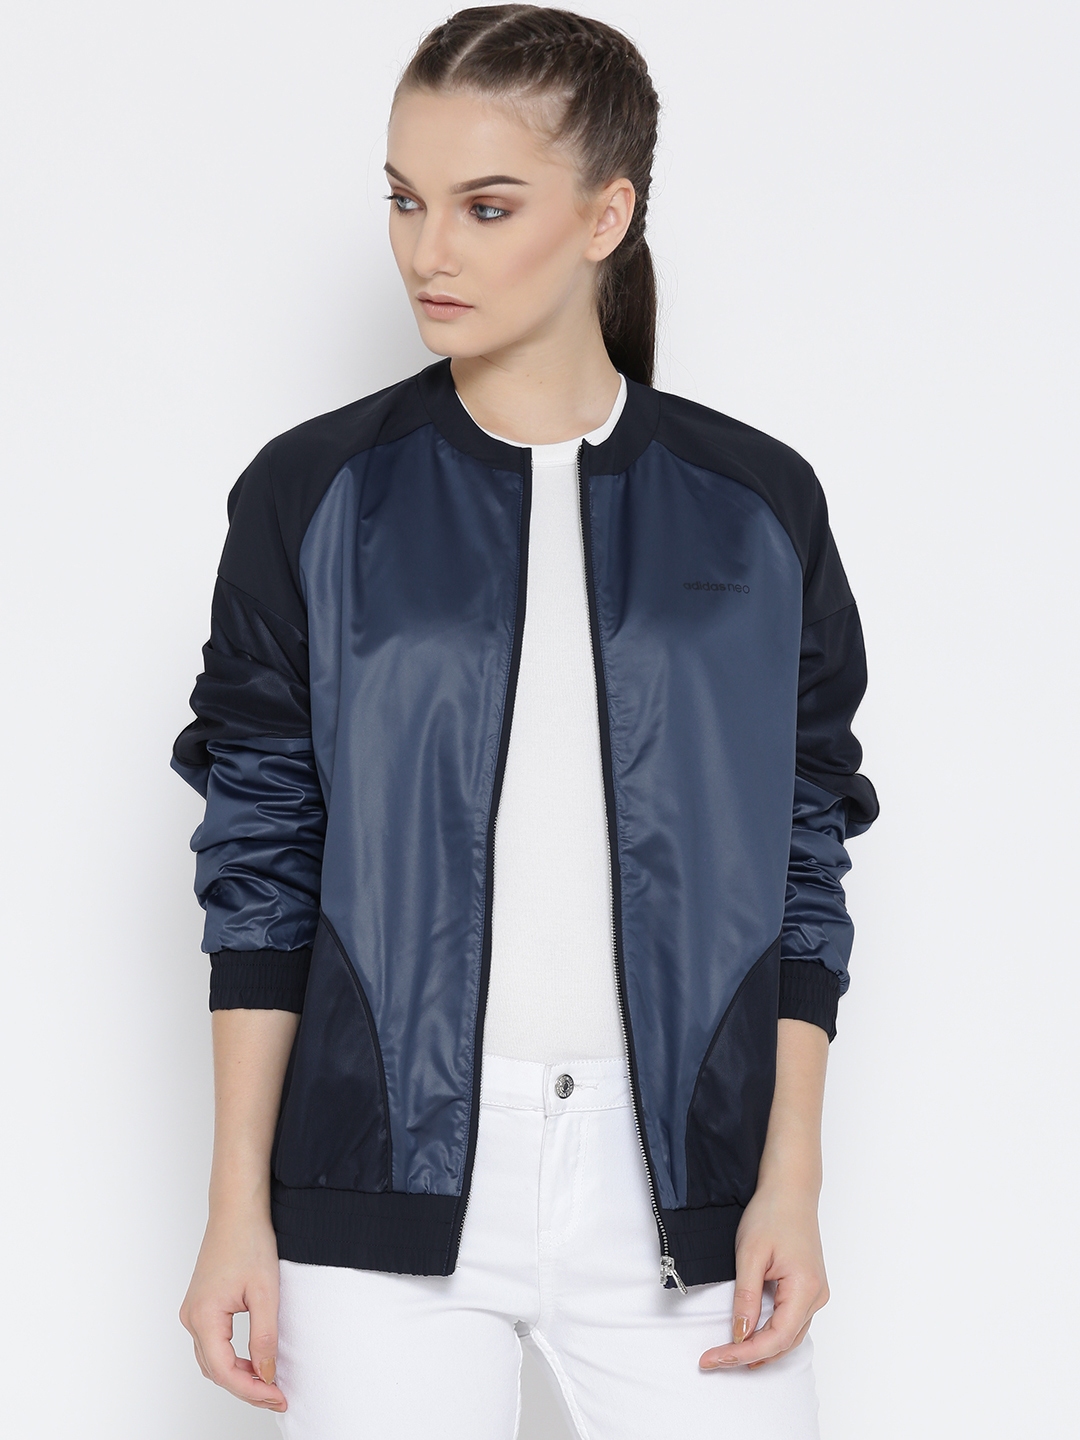 adidas neo leather jacket